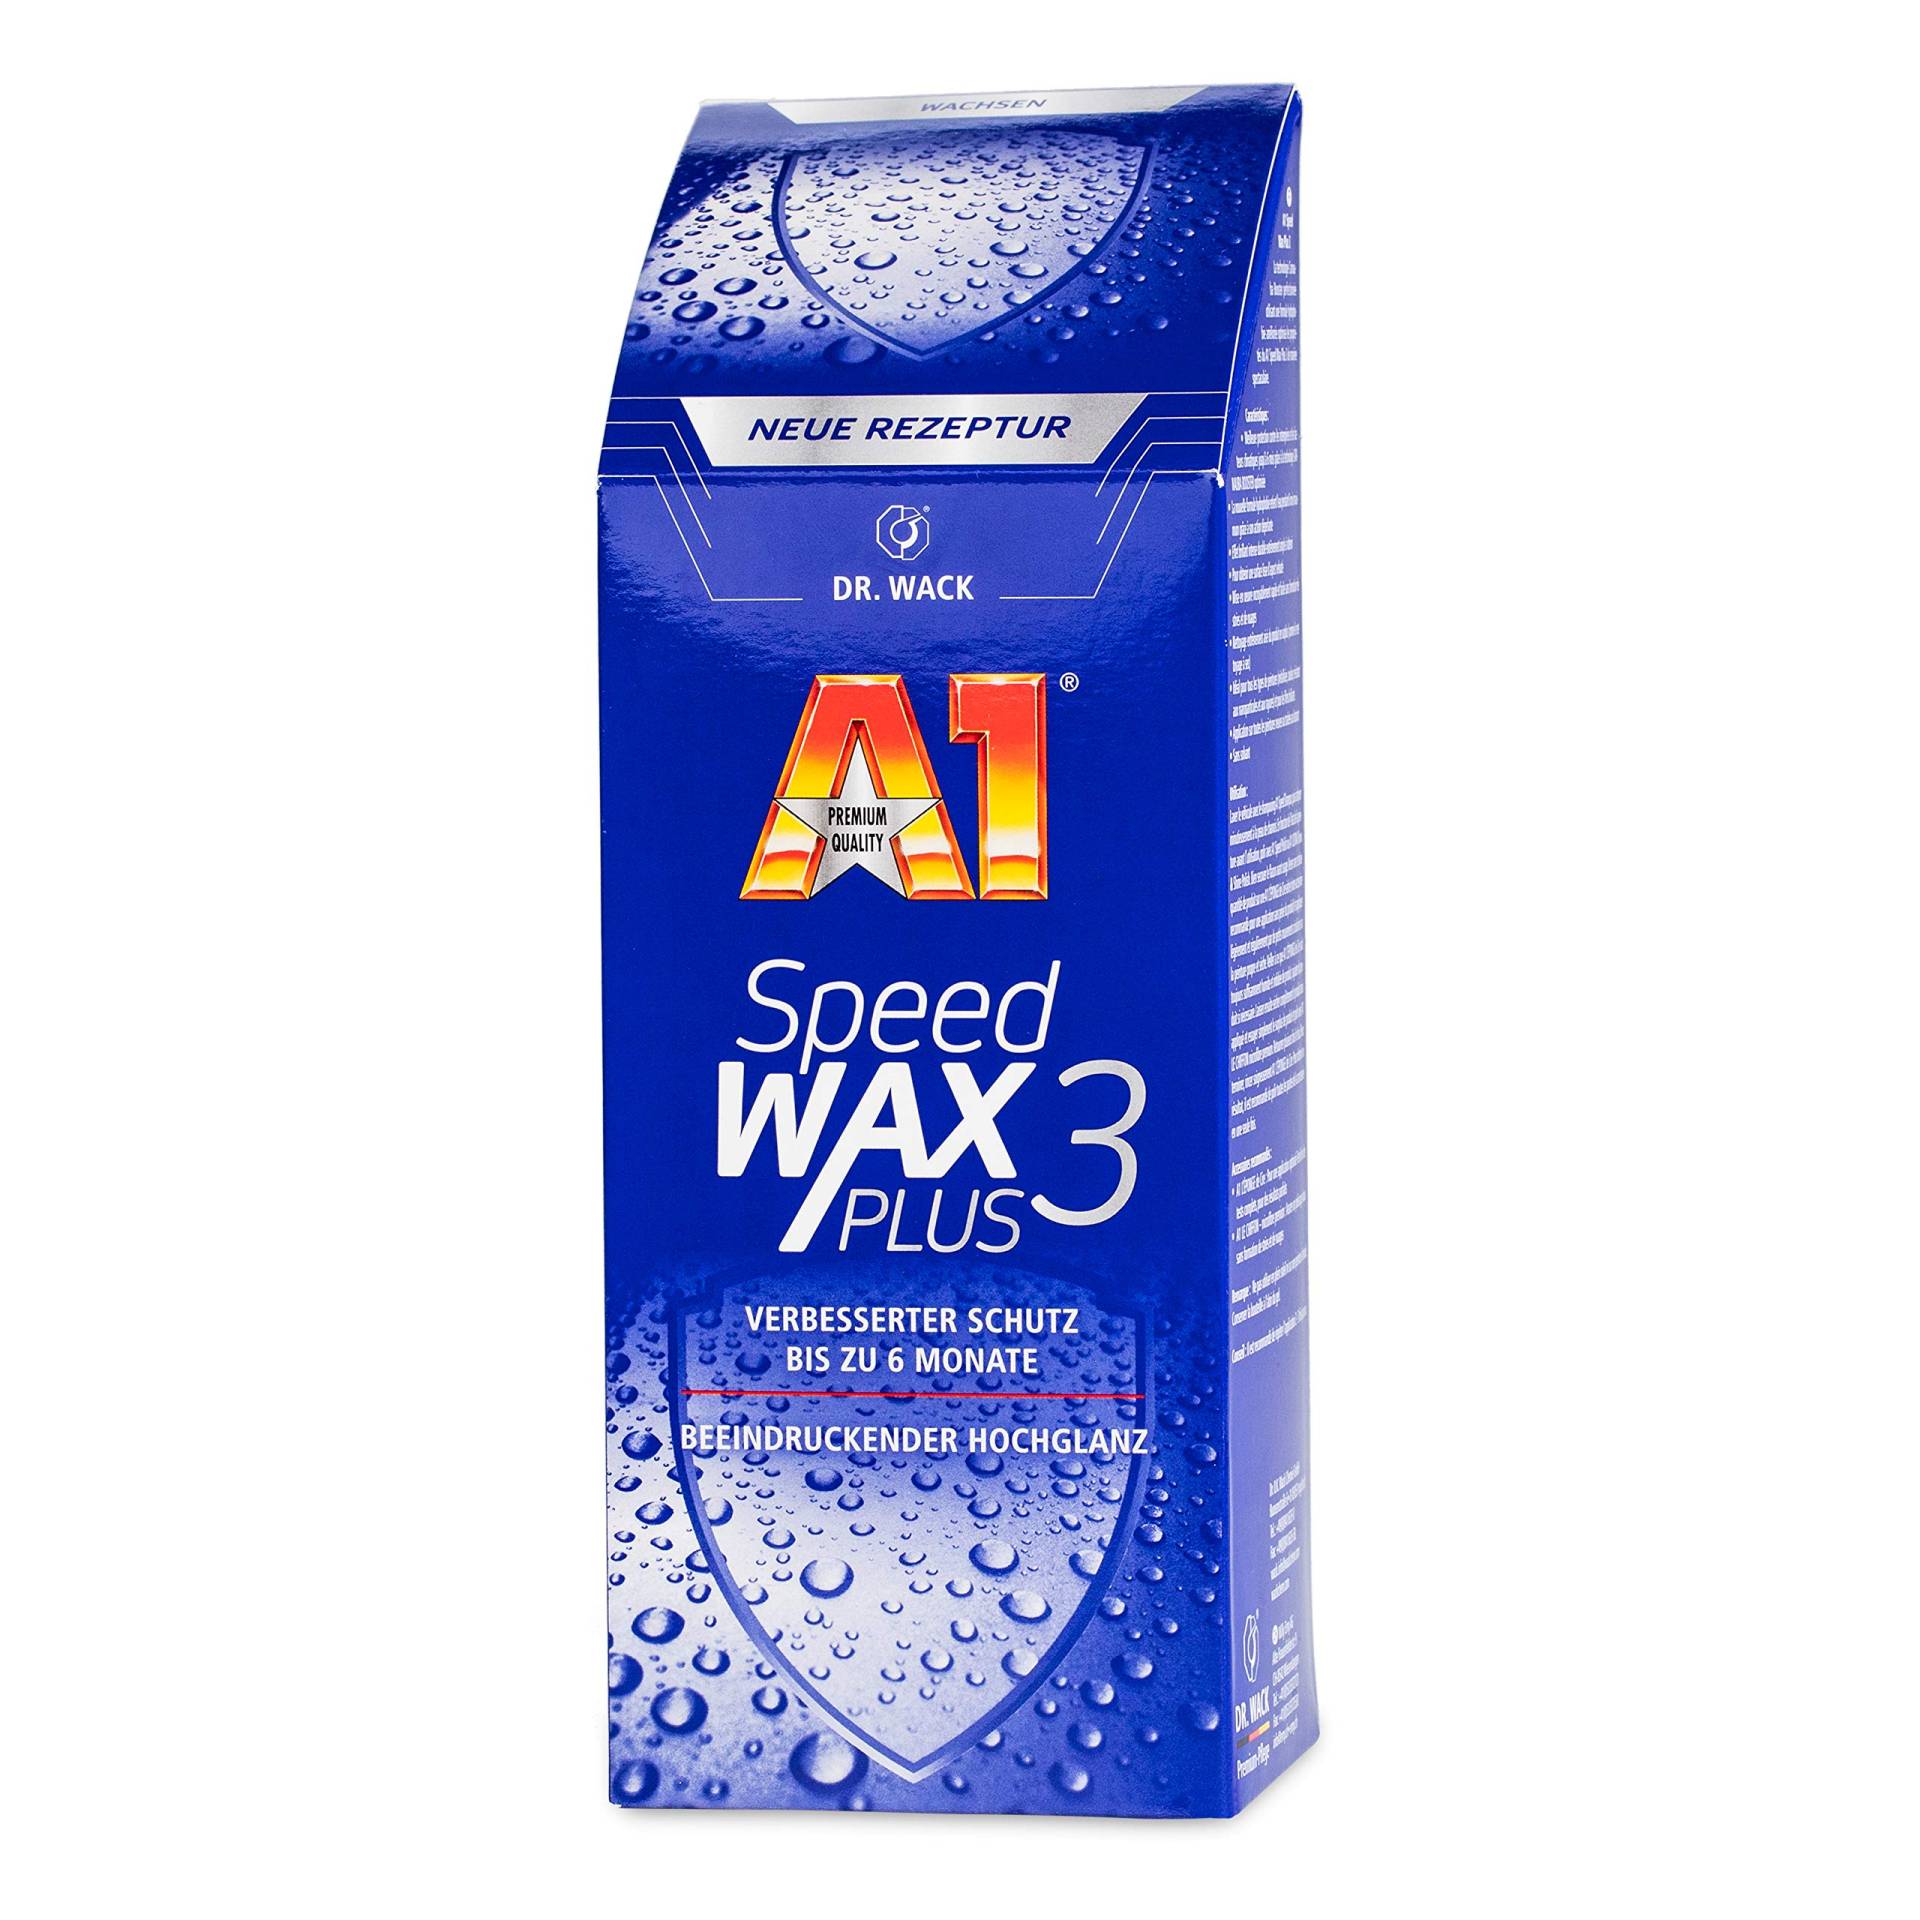 A1 Speed Wax Plus 3 von DR. WACK